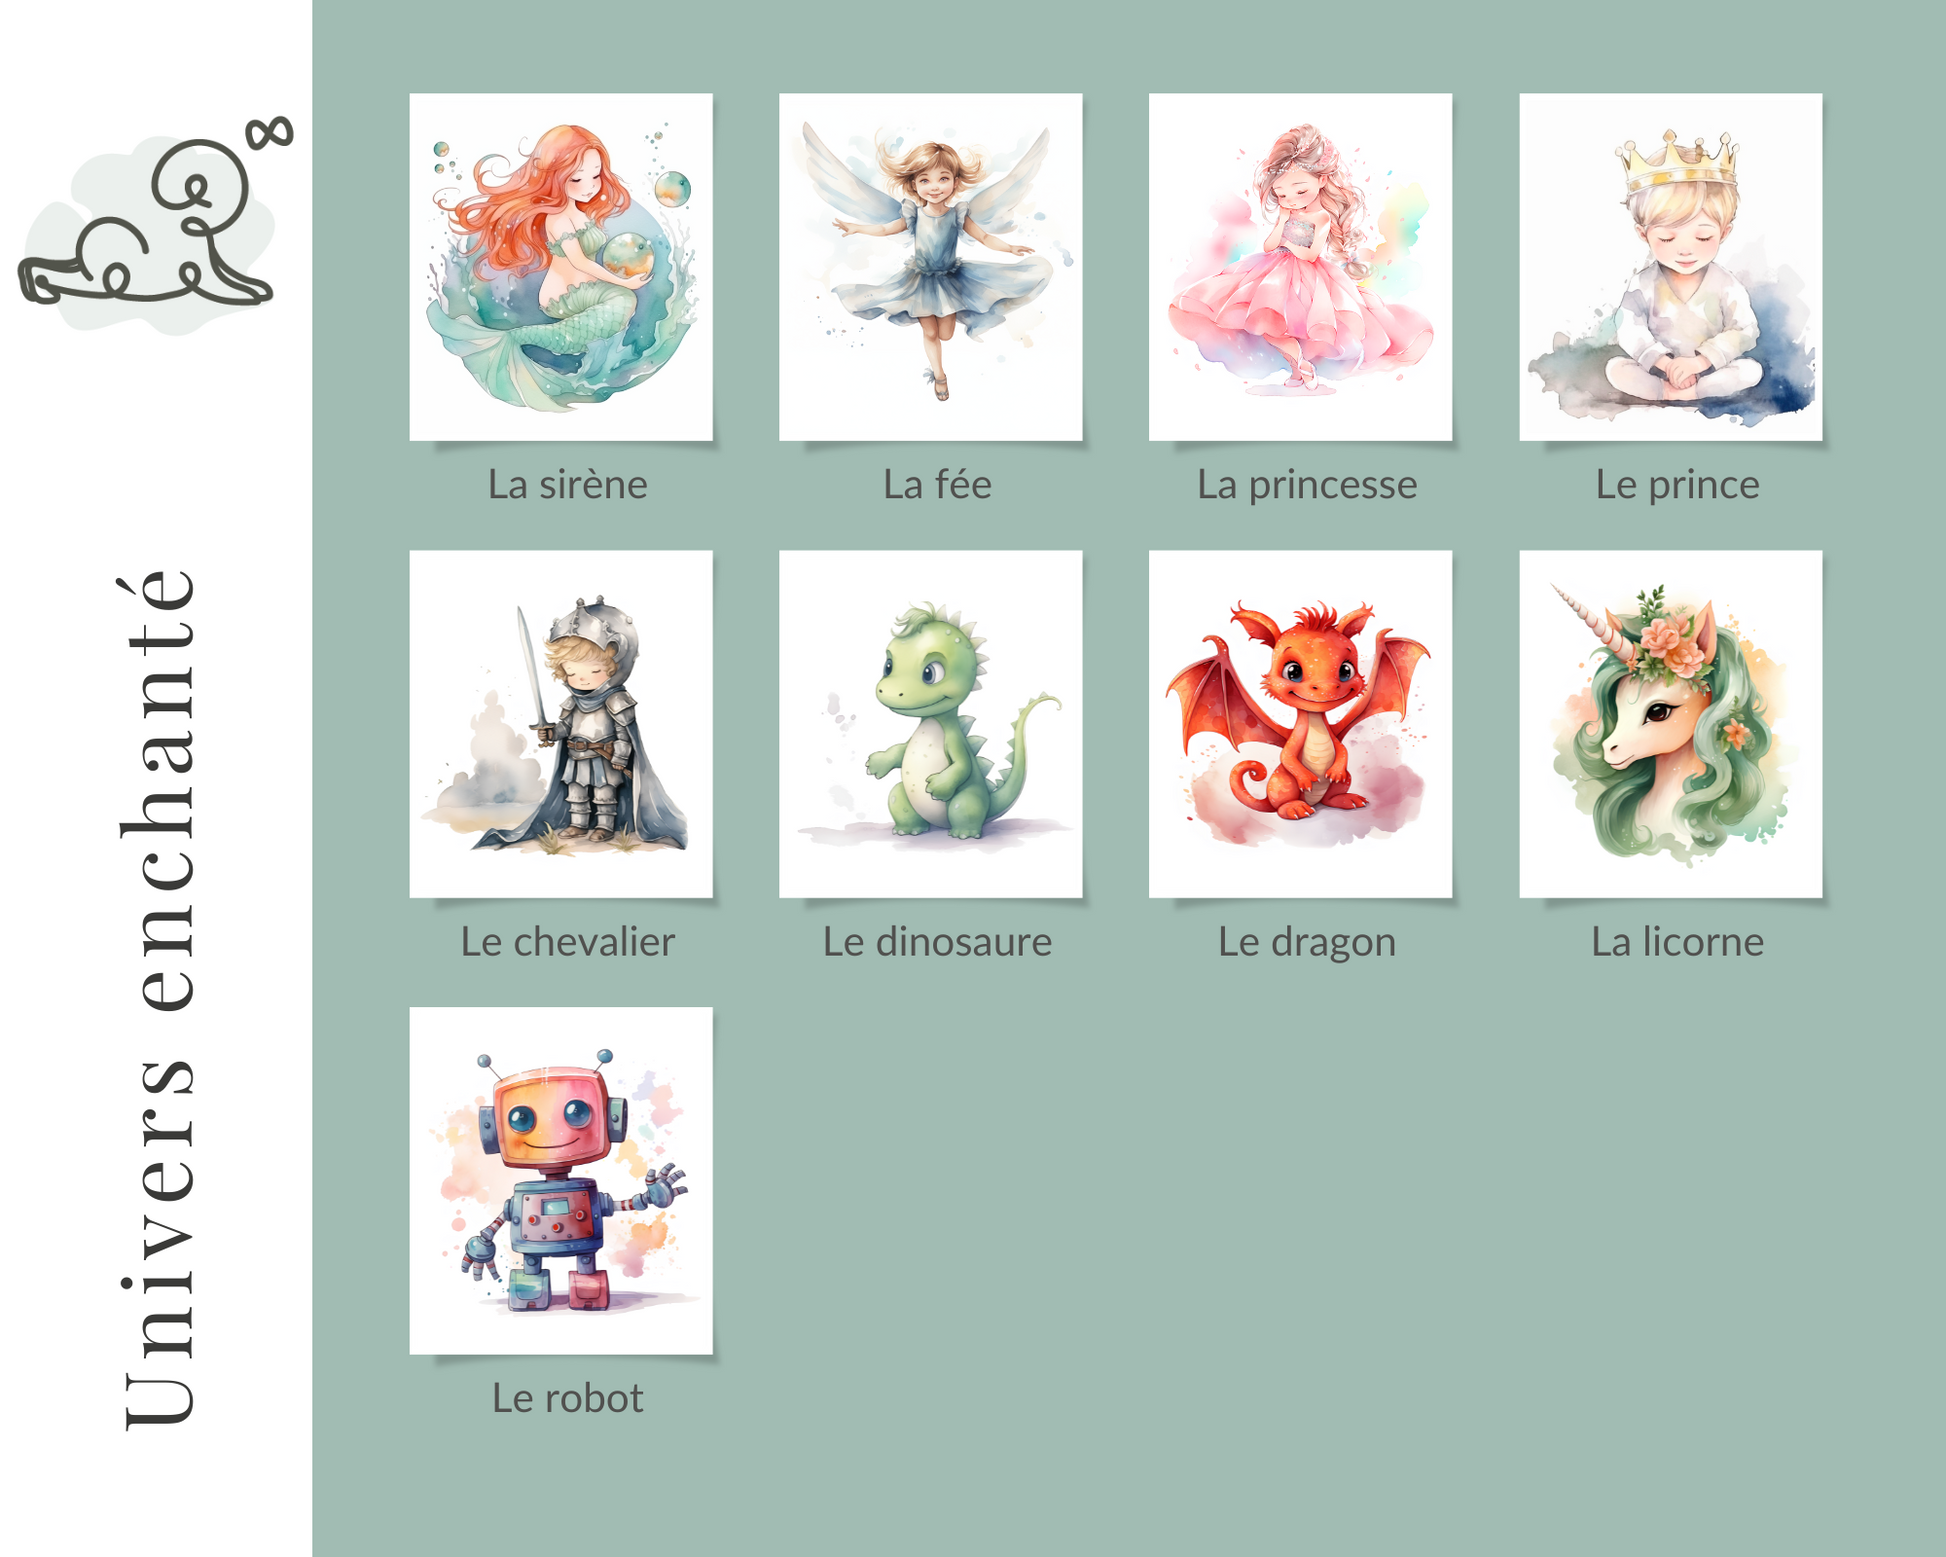 Illustration pour chambre d'enfant, bébé, collection univers enchanté, sirène, fée, princesse, prince, chevalier, dinosaure, dragon, licorne, robot